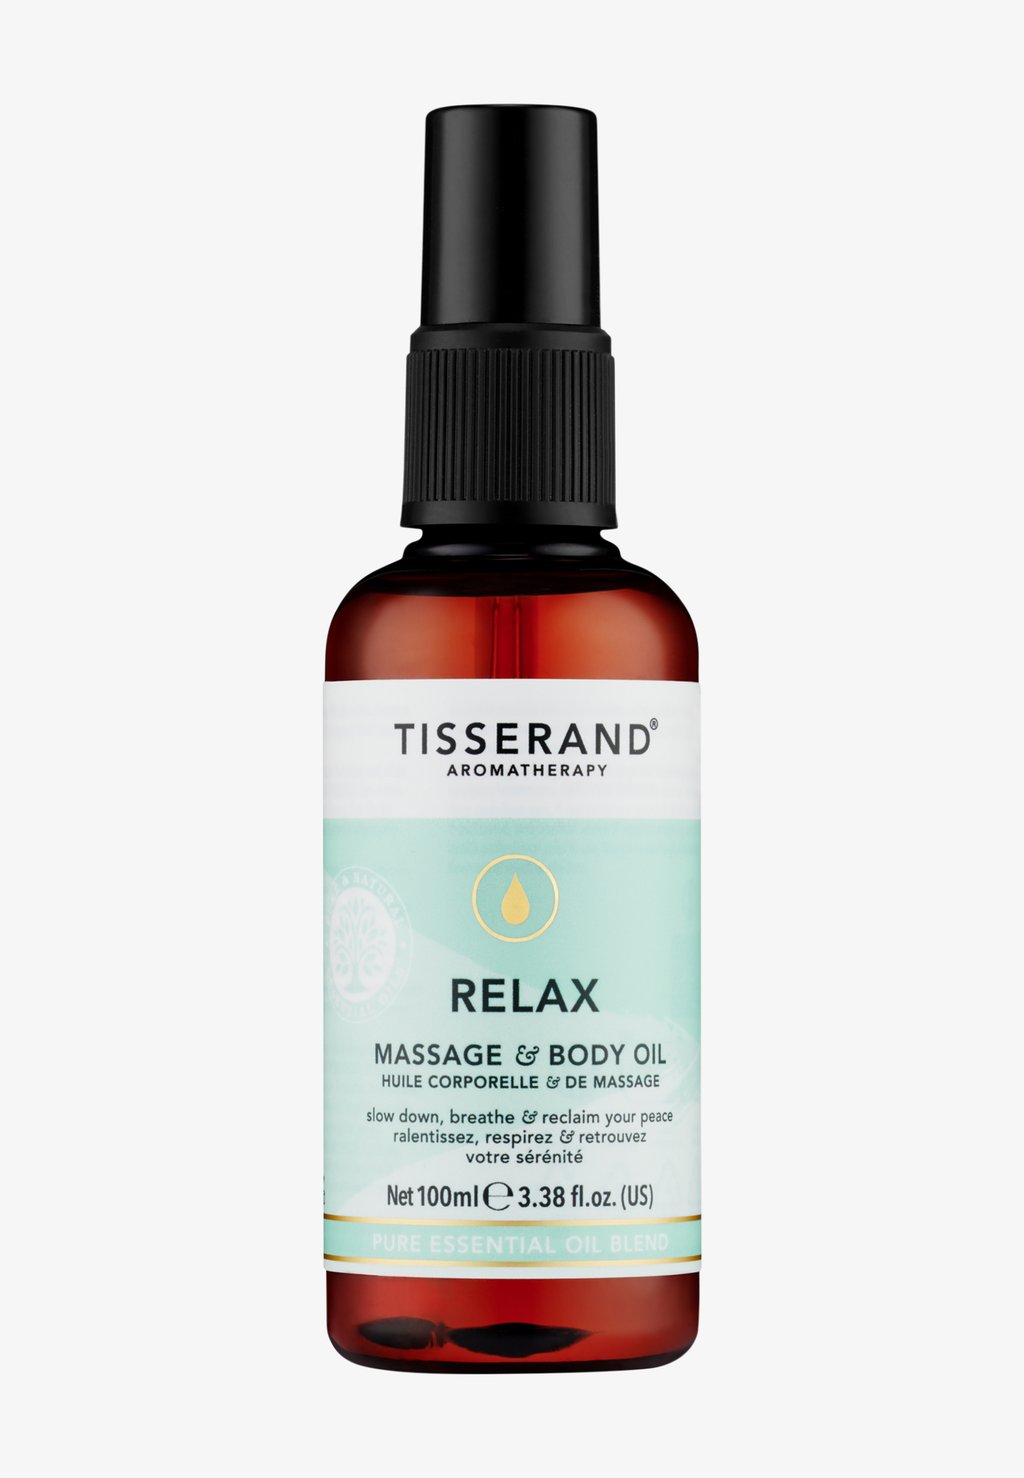 Масло для тела Relax Massage & Body Oil Tisserand Aromatherapy